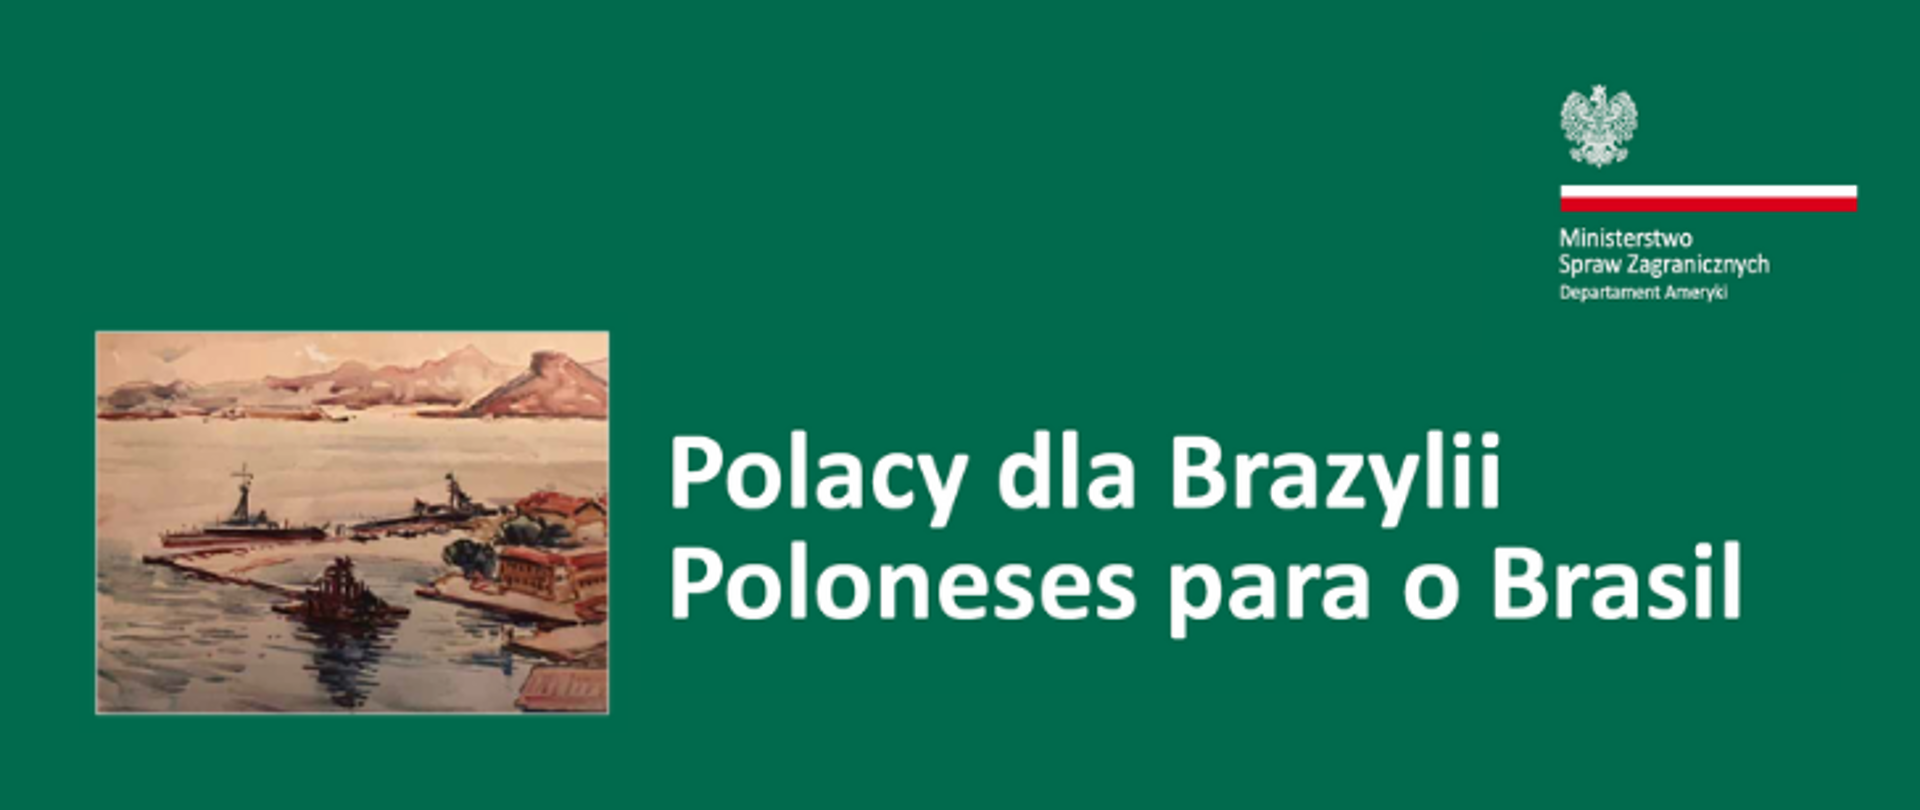 Polacy dla Brazylii.png